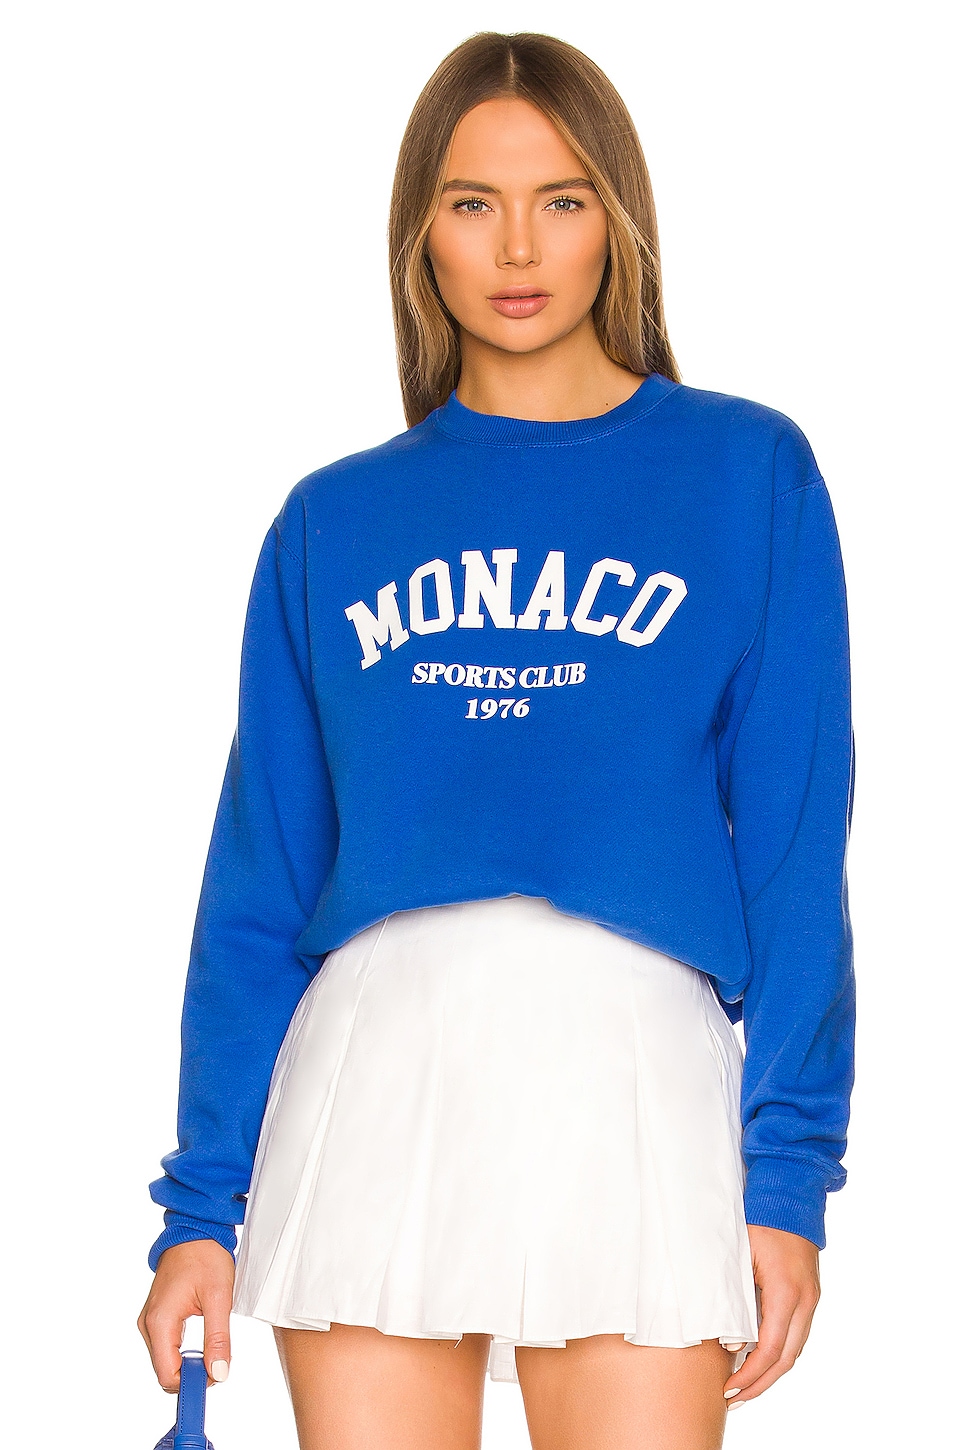  Monaco Crewneck Sweatshirt in Blue 